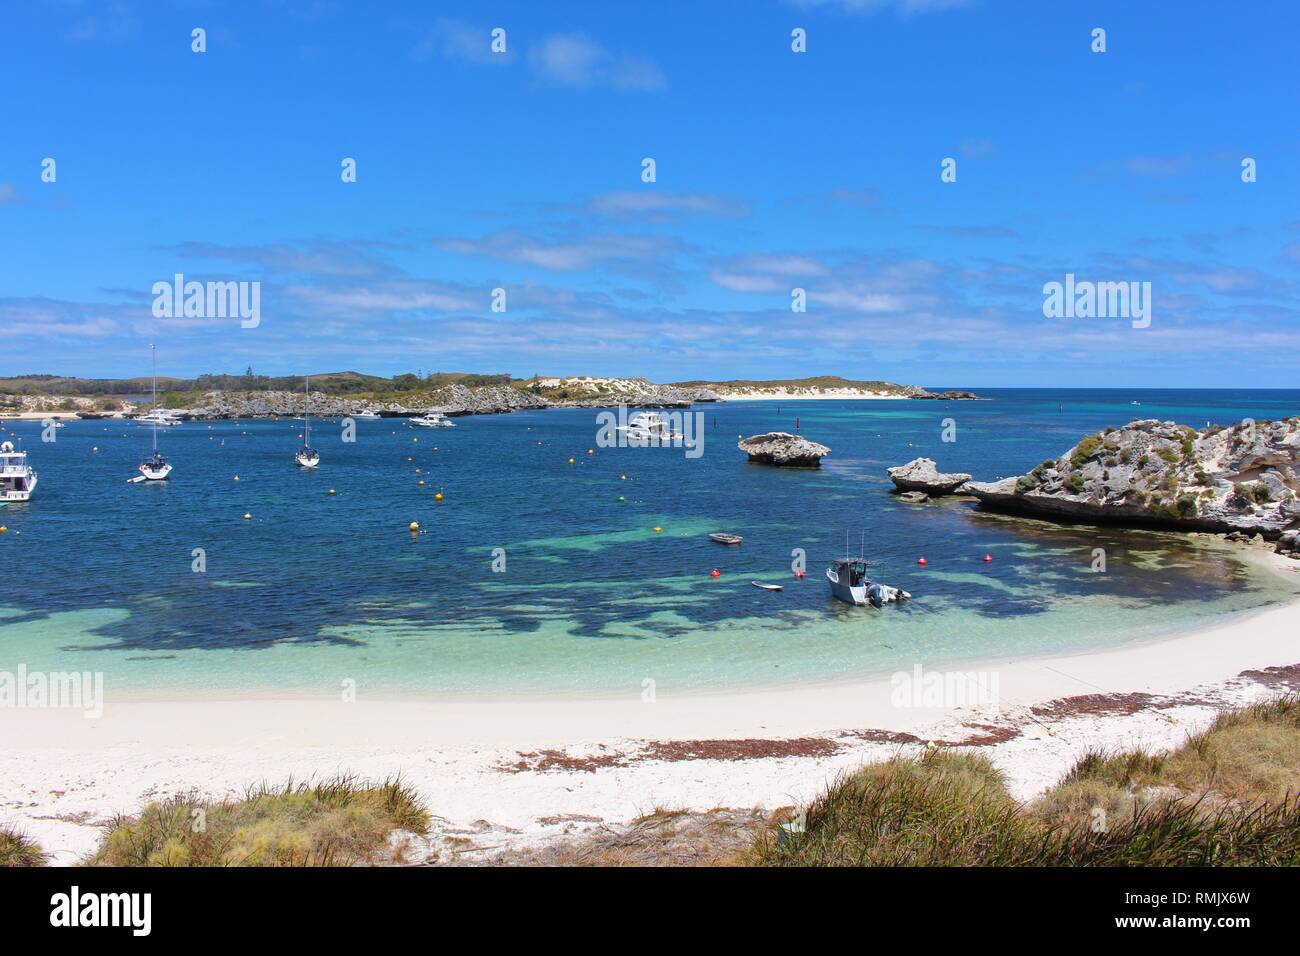 Magnifique baie avec la mer bleu clair avec des yachts et une jetée à Rottnest Island, Australie. Banque D'Images